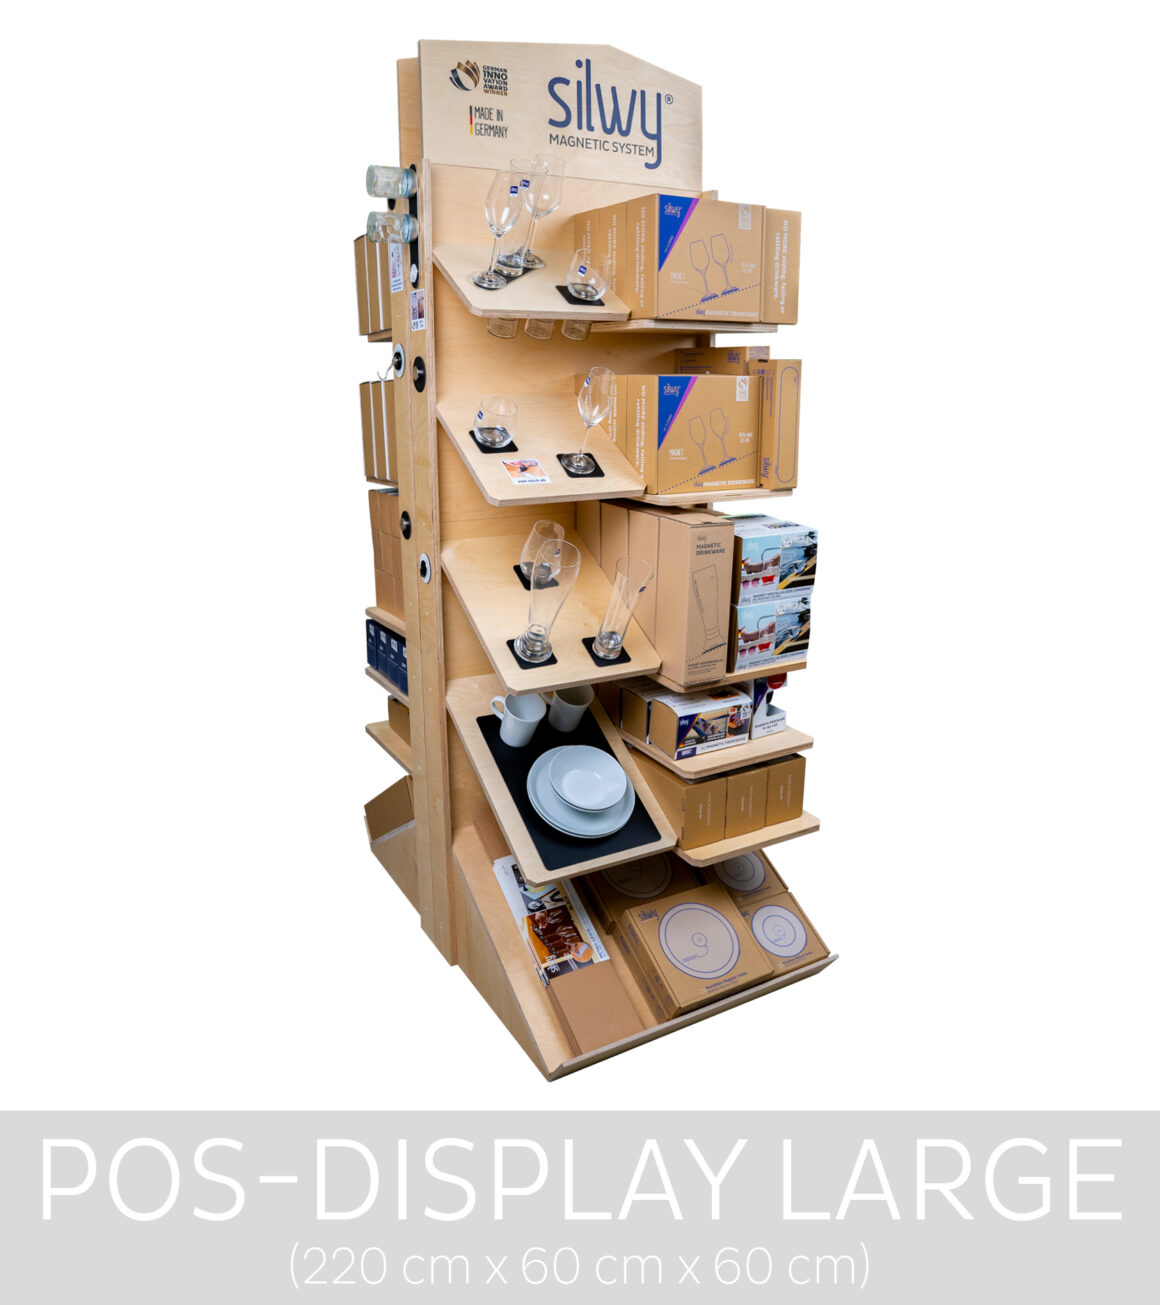 POS-Displays-Large